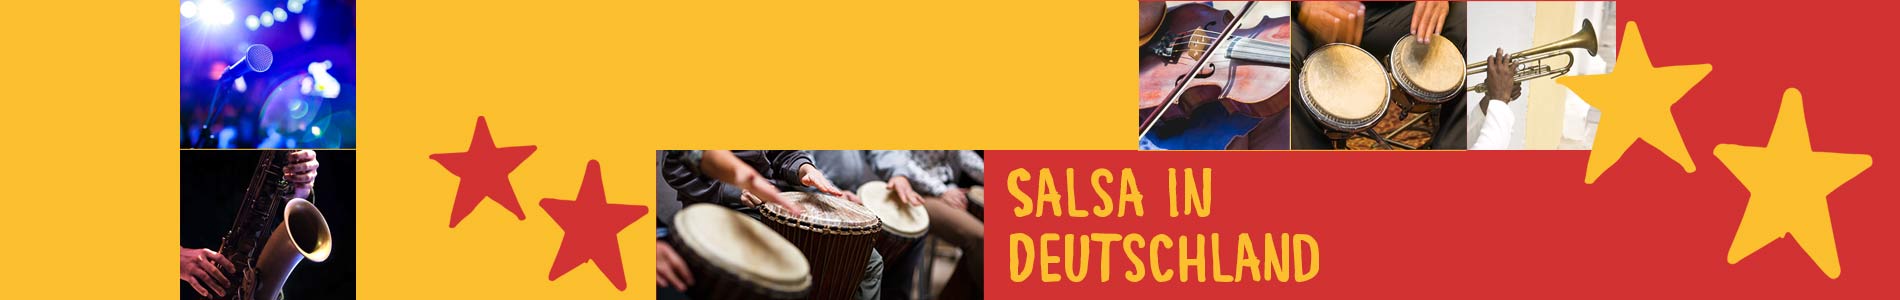 Salsa in Butjadingen – Salsa lernen und tanzen, Tanzkurse, Partys, Veranstaltungen